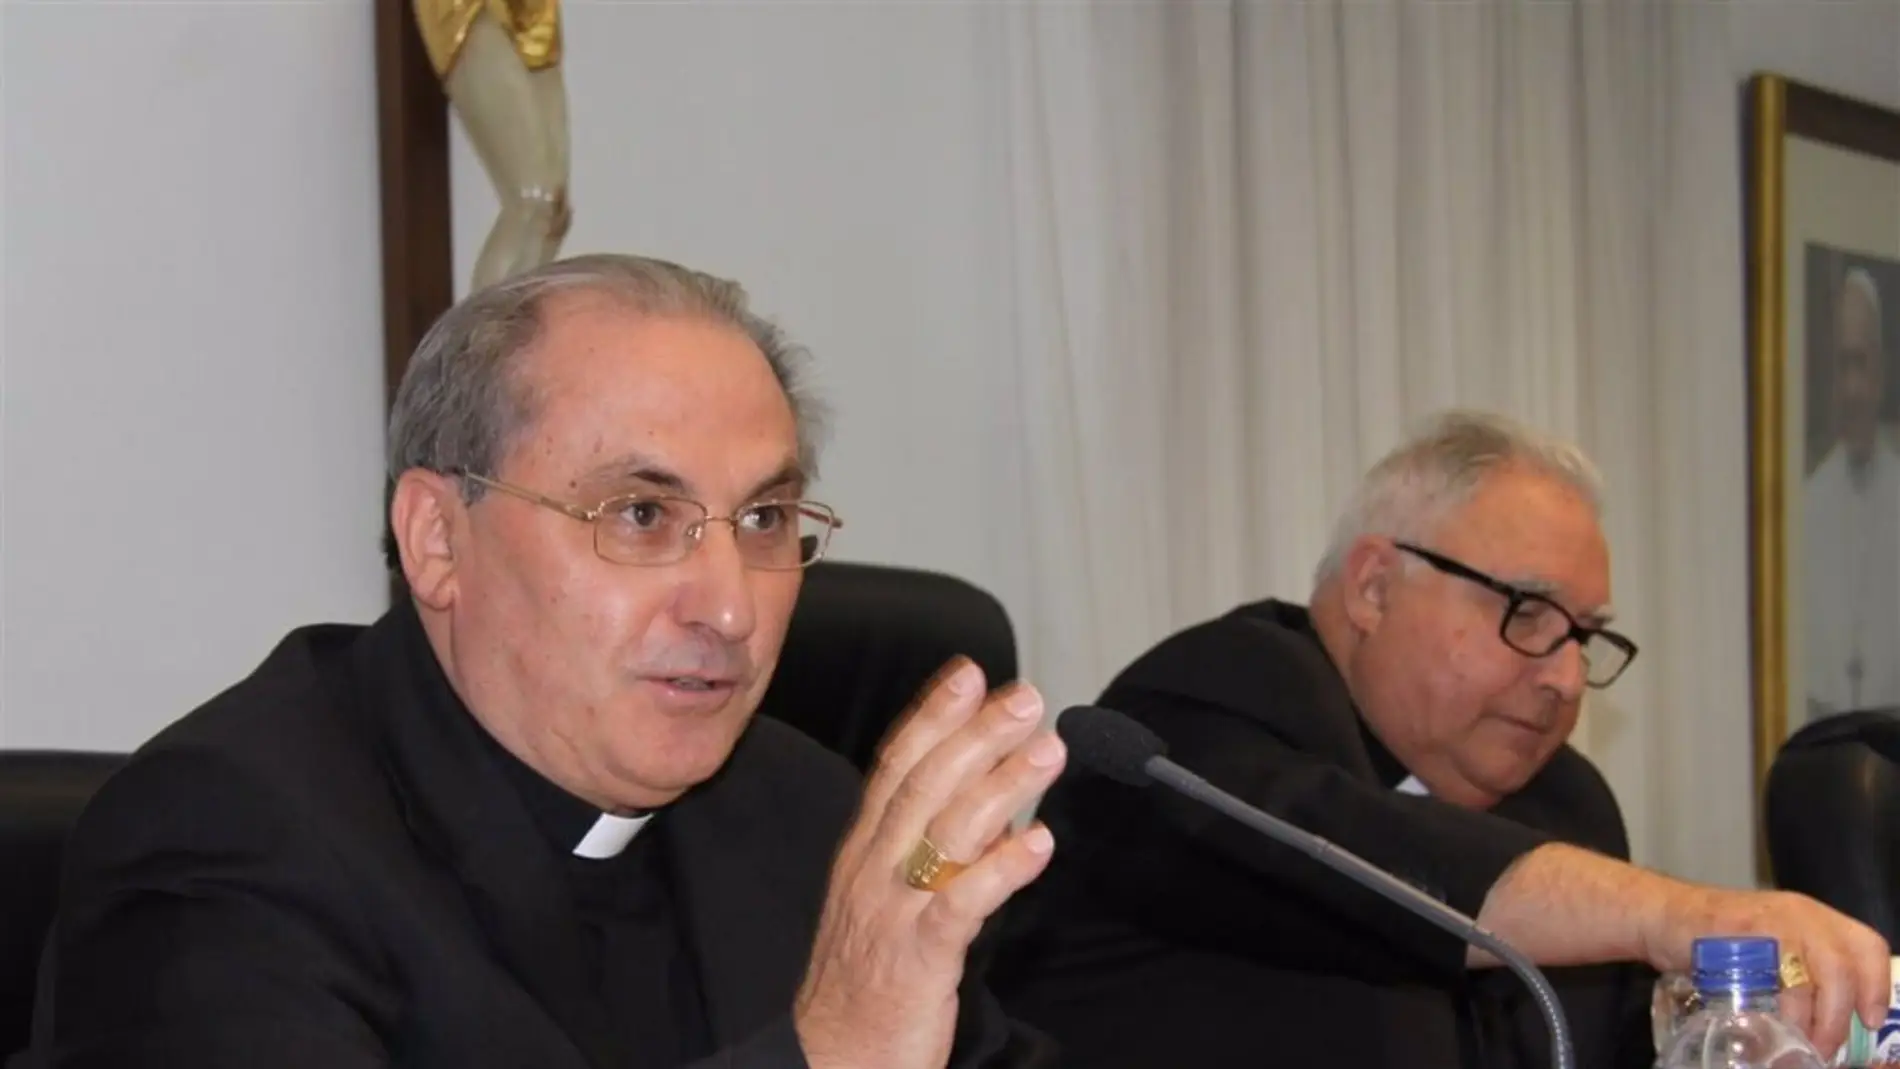 El arzobispo de Mérida-Badajoz presenta su renuncia al Papa al cumplir los 75 años